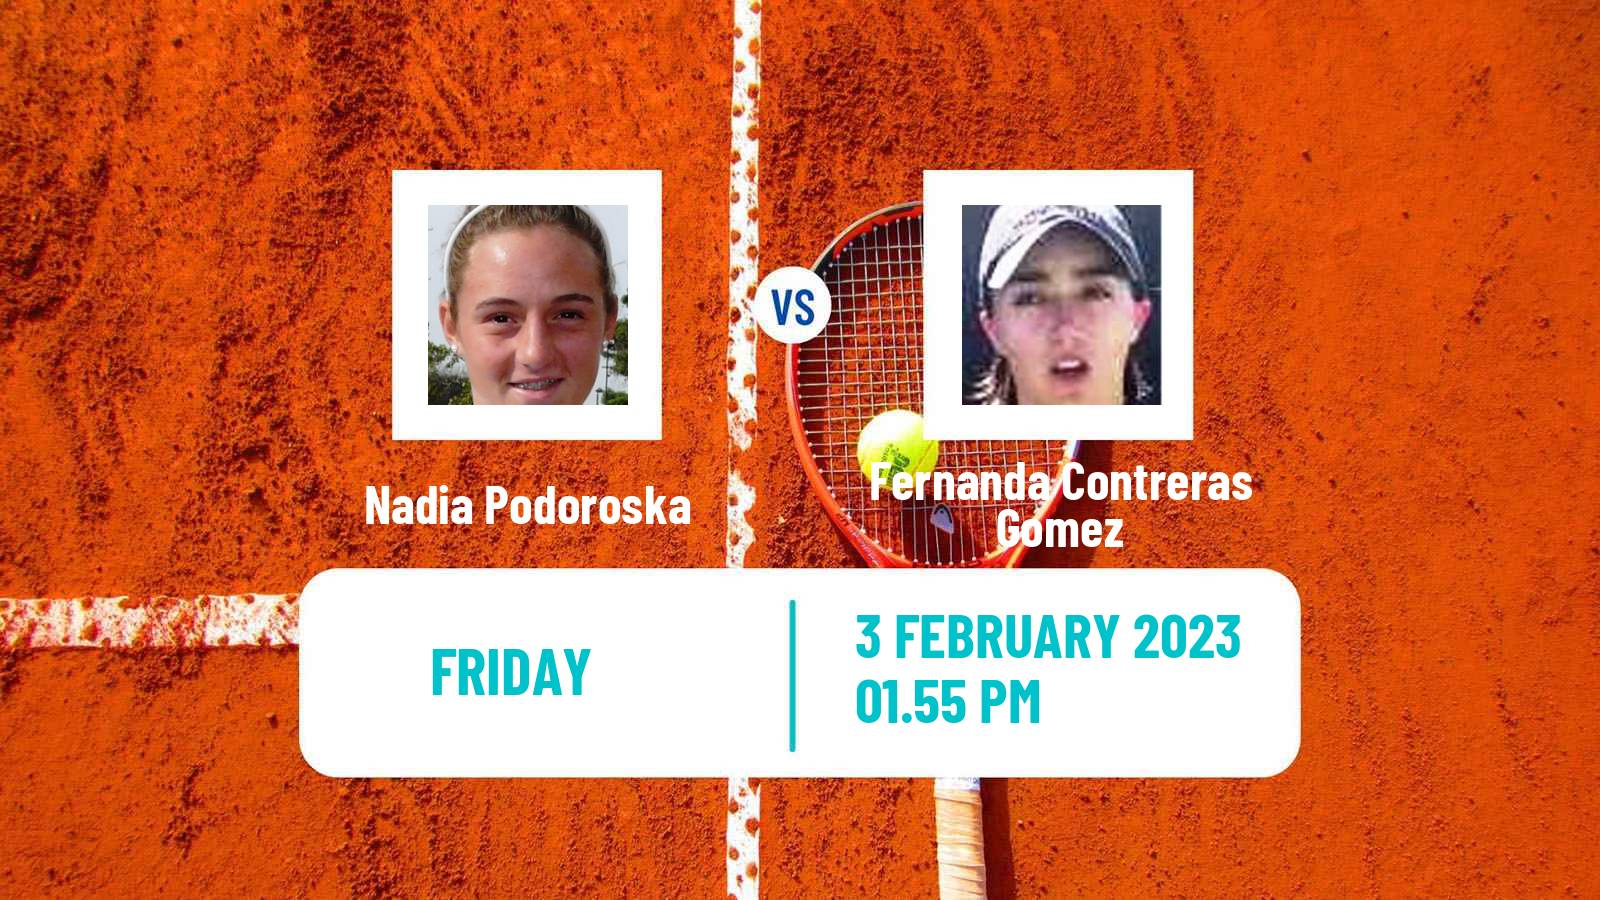 Tennis ATP Challenger Nadia Podoroska - Fernanda Contreras Gomez